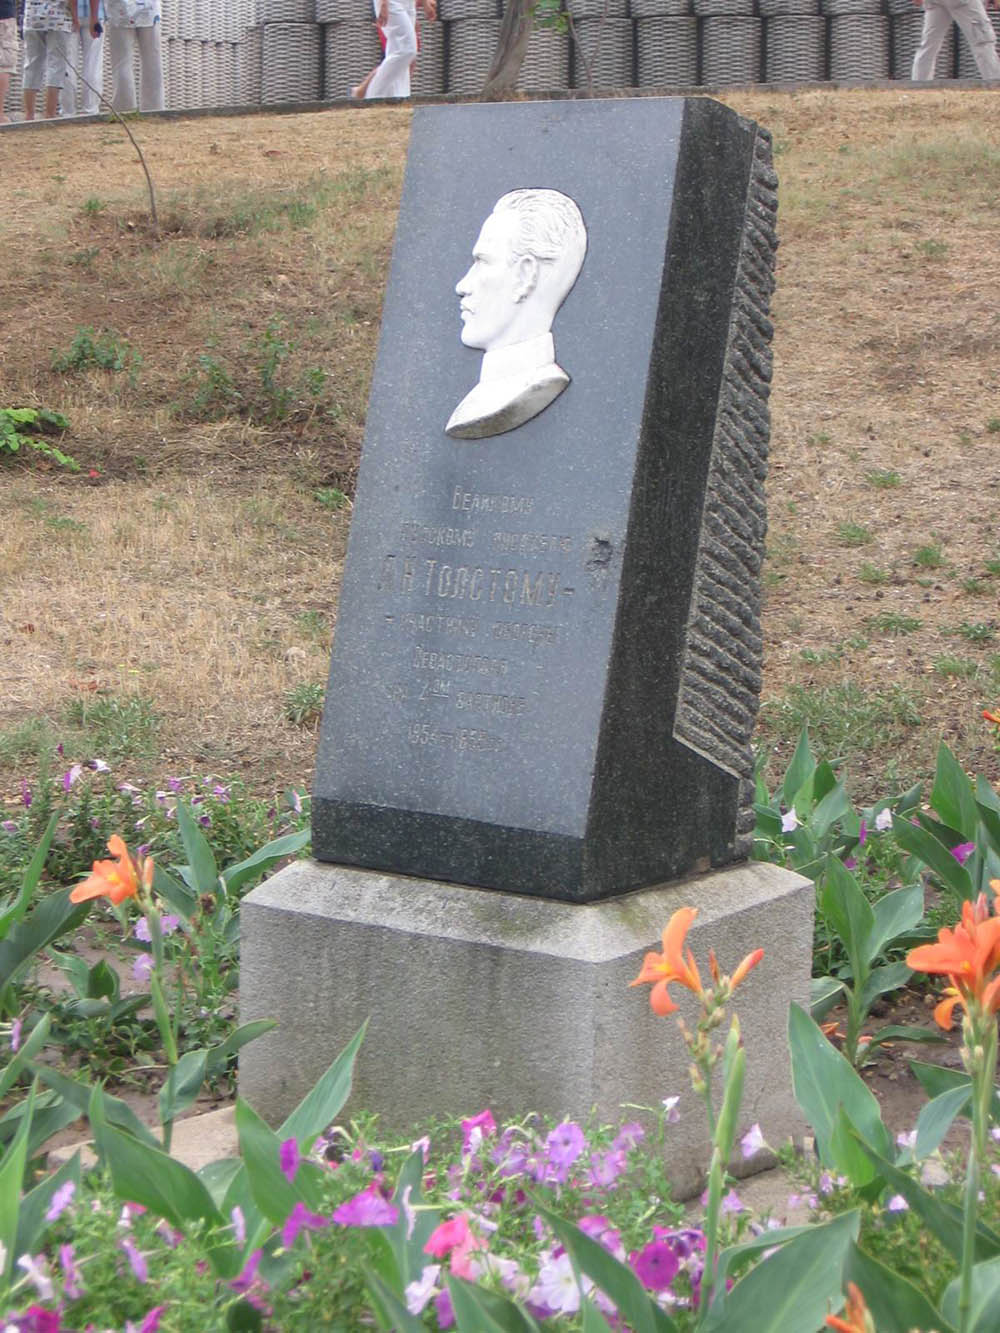 Leo Tolstoy Memorial